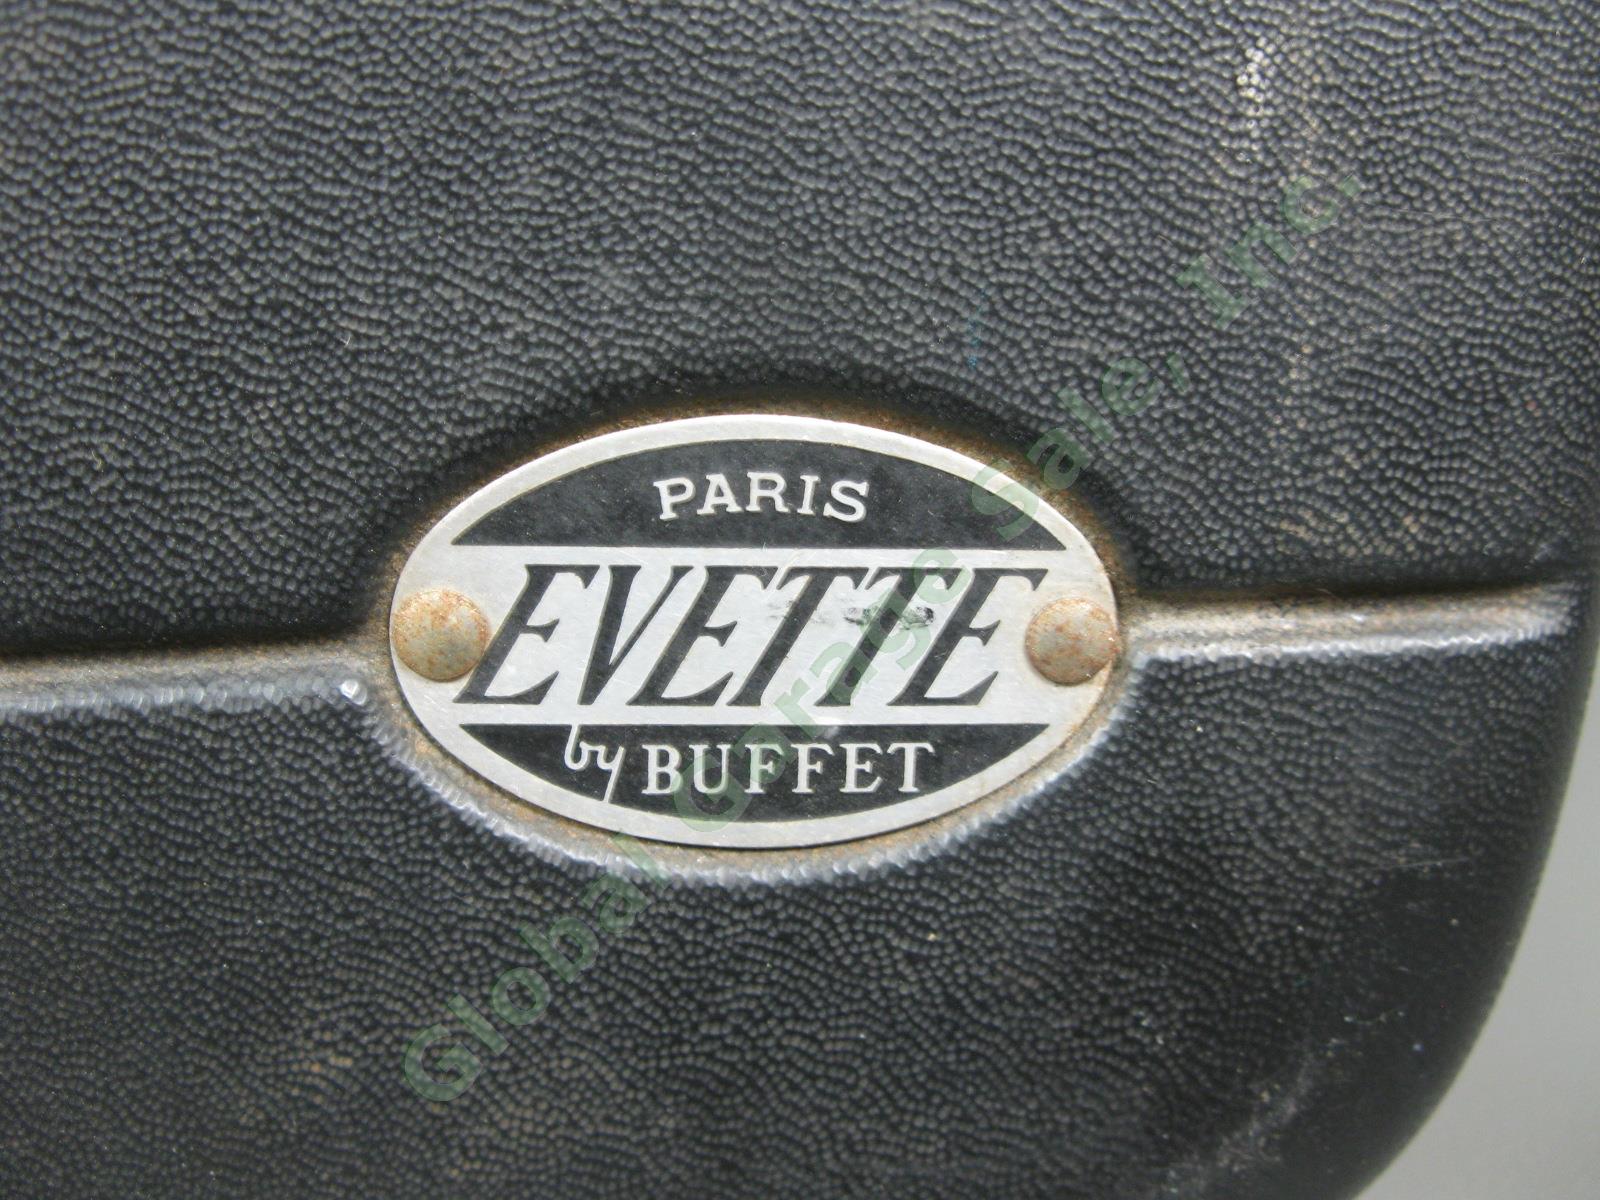 Vintage Buffet Crampon Evette Wood Clarinet D Series & Case D4774 Paris France 8